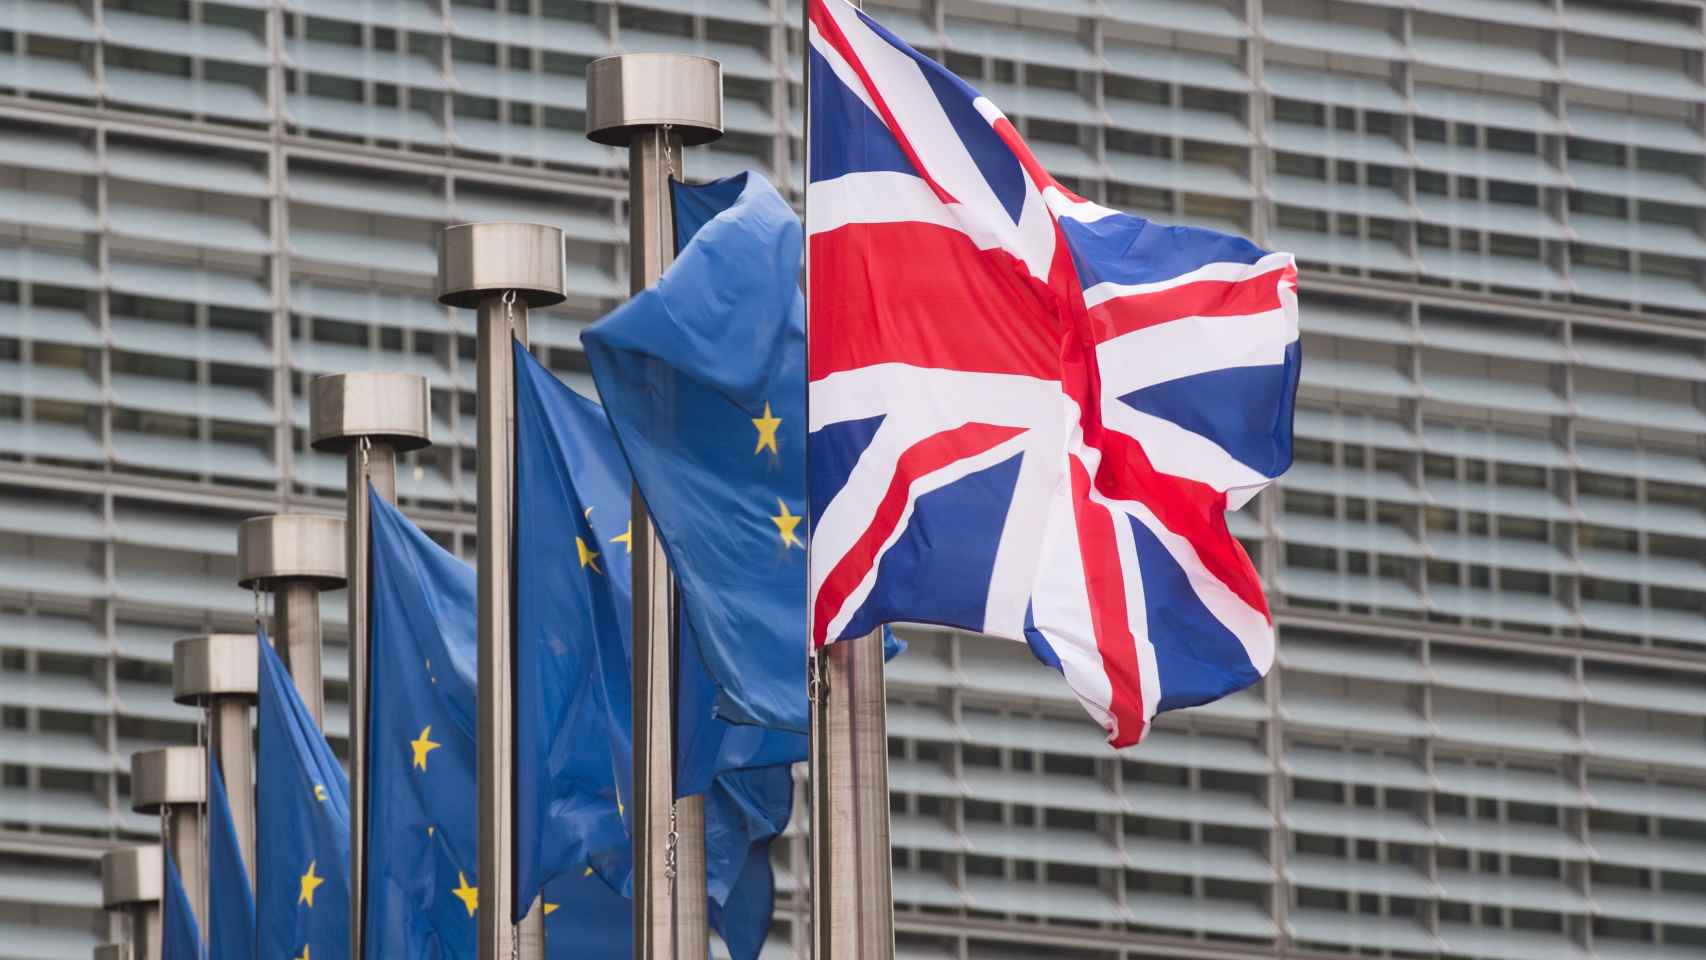 Banderas de la Unión Europea y el Reino Unido.